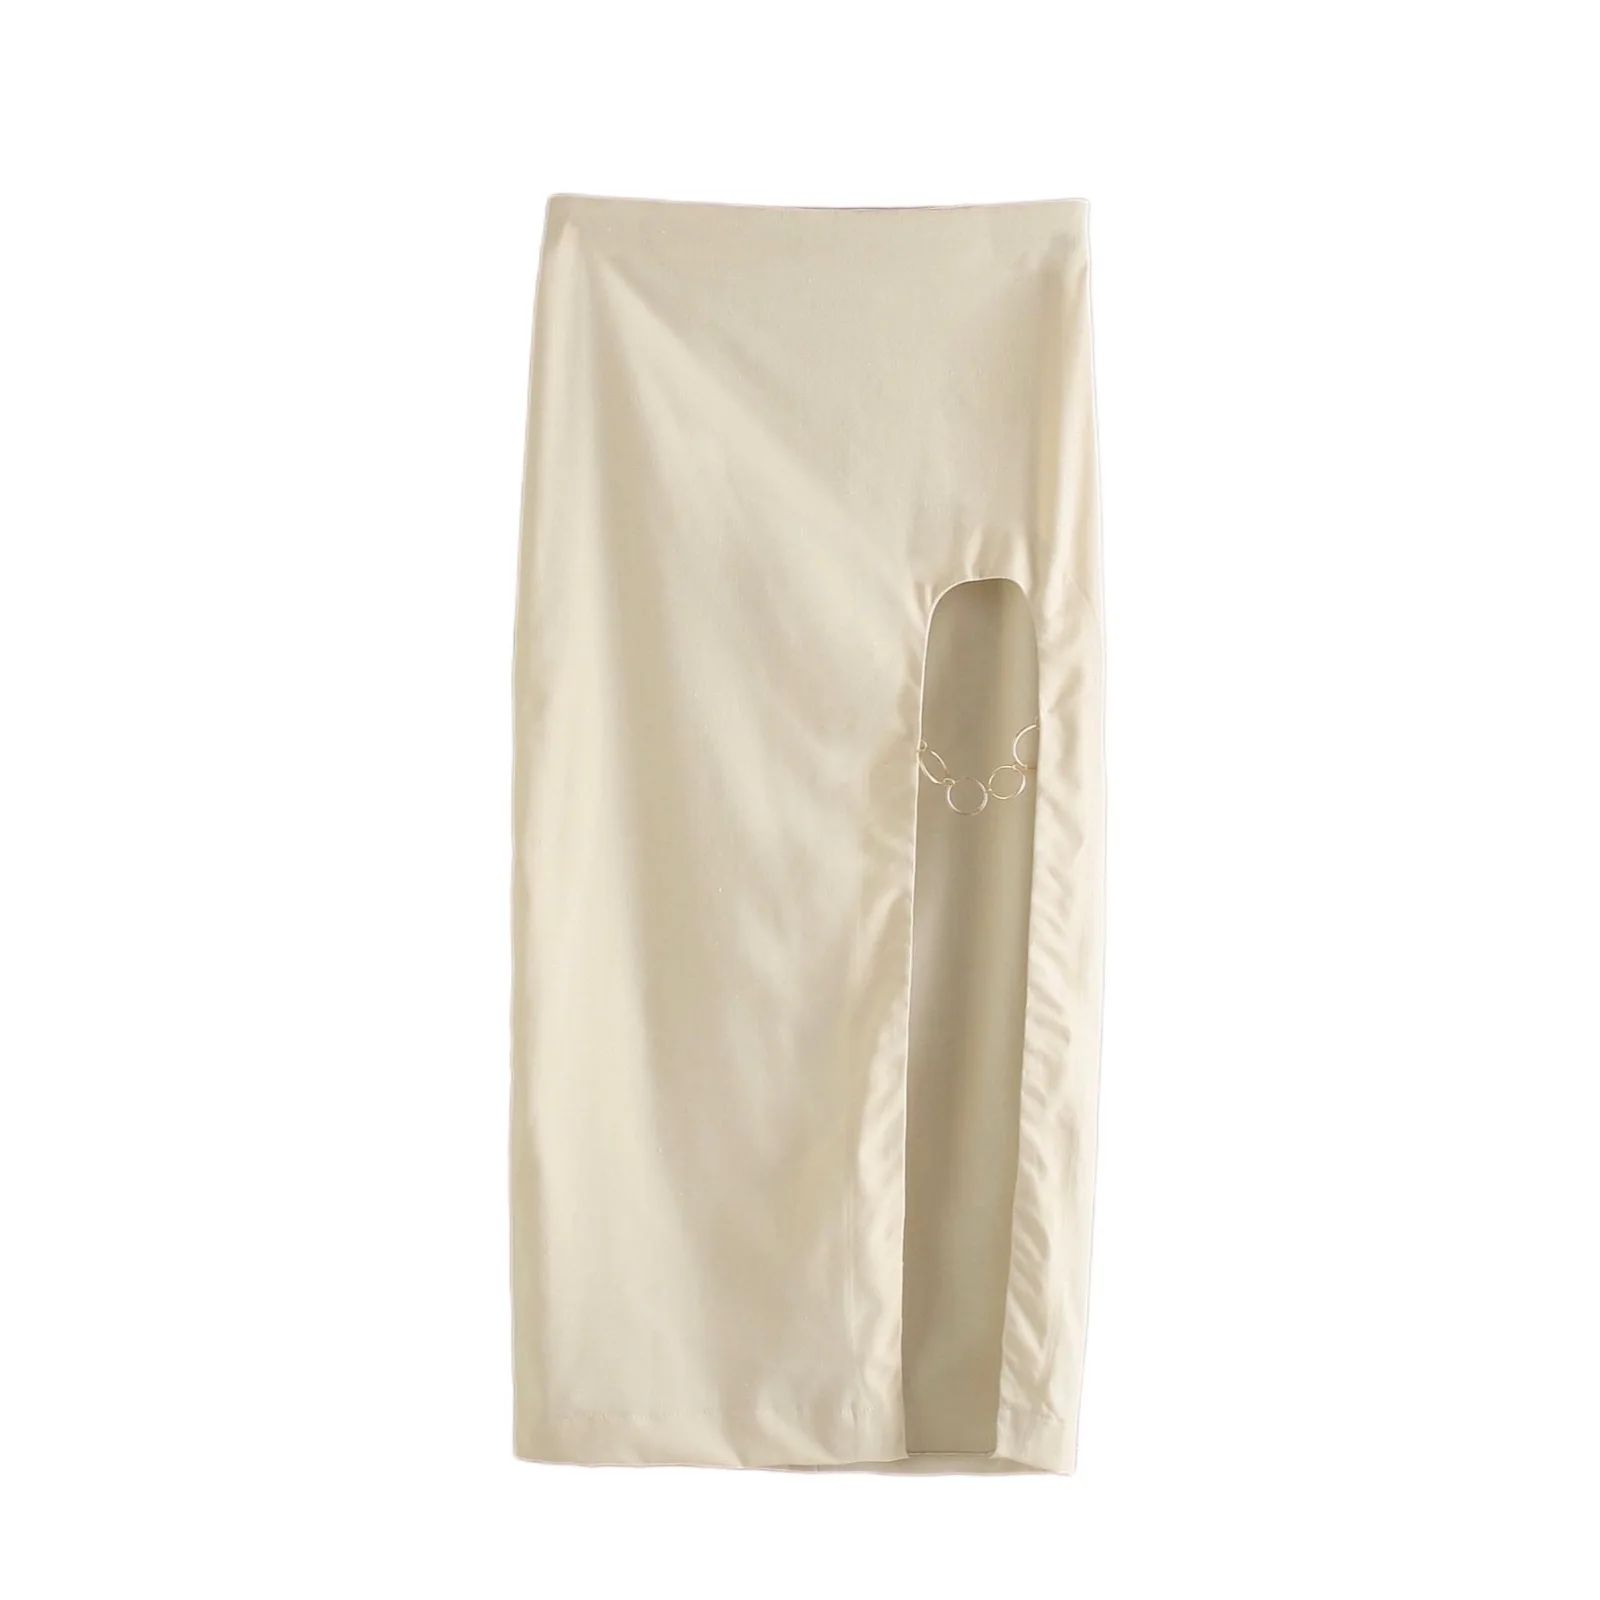 Женская юбка с металлическим кольцом белая элегантная повседневная Юбка-миди